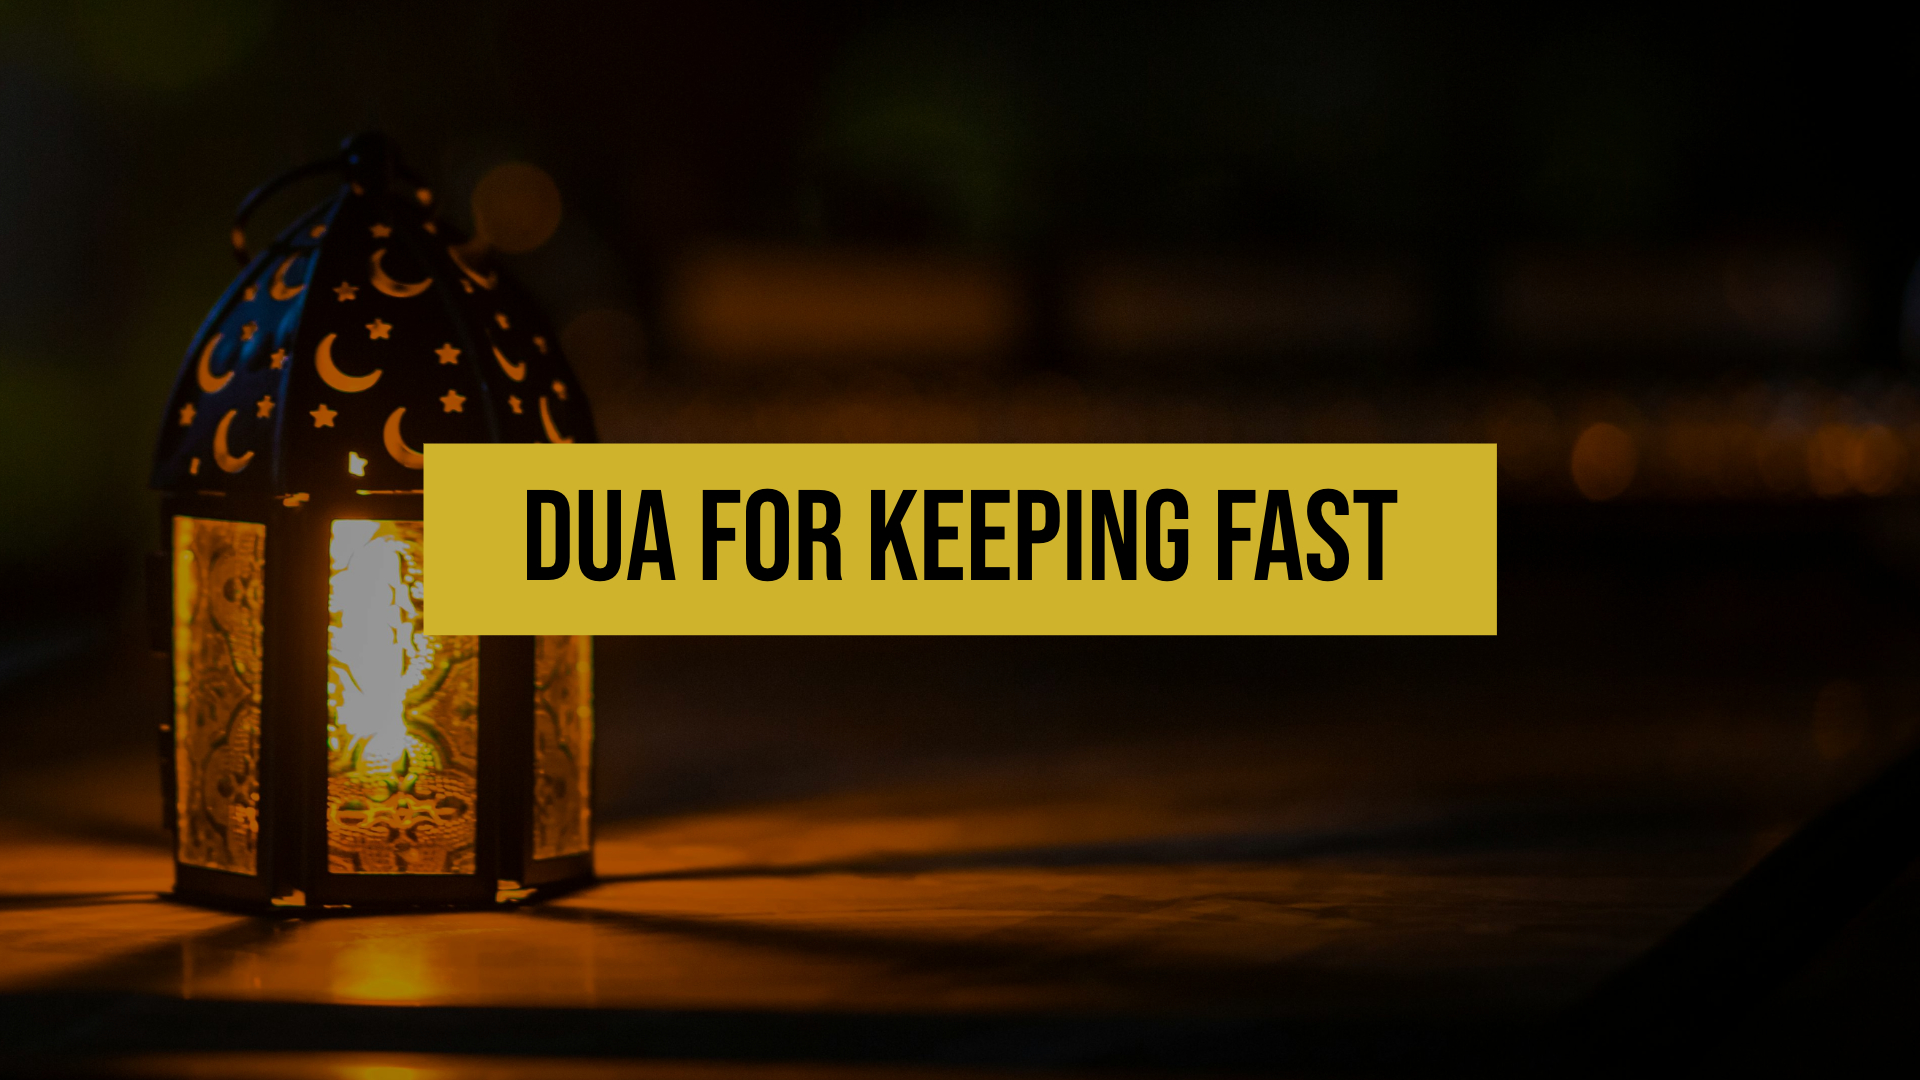 Dua pour jeûner pendant le Ramadan (Dua pour Suhoor)